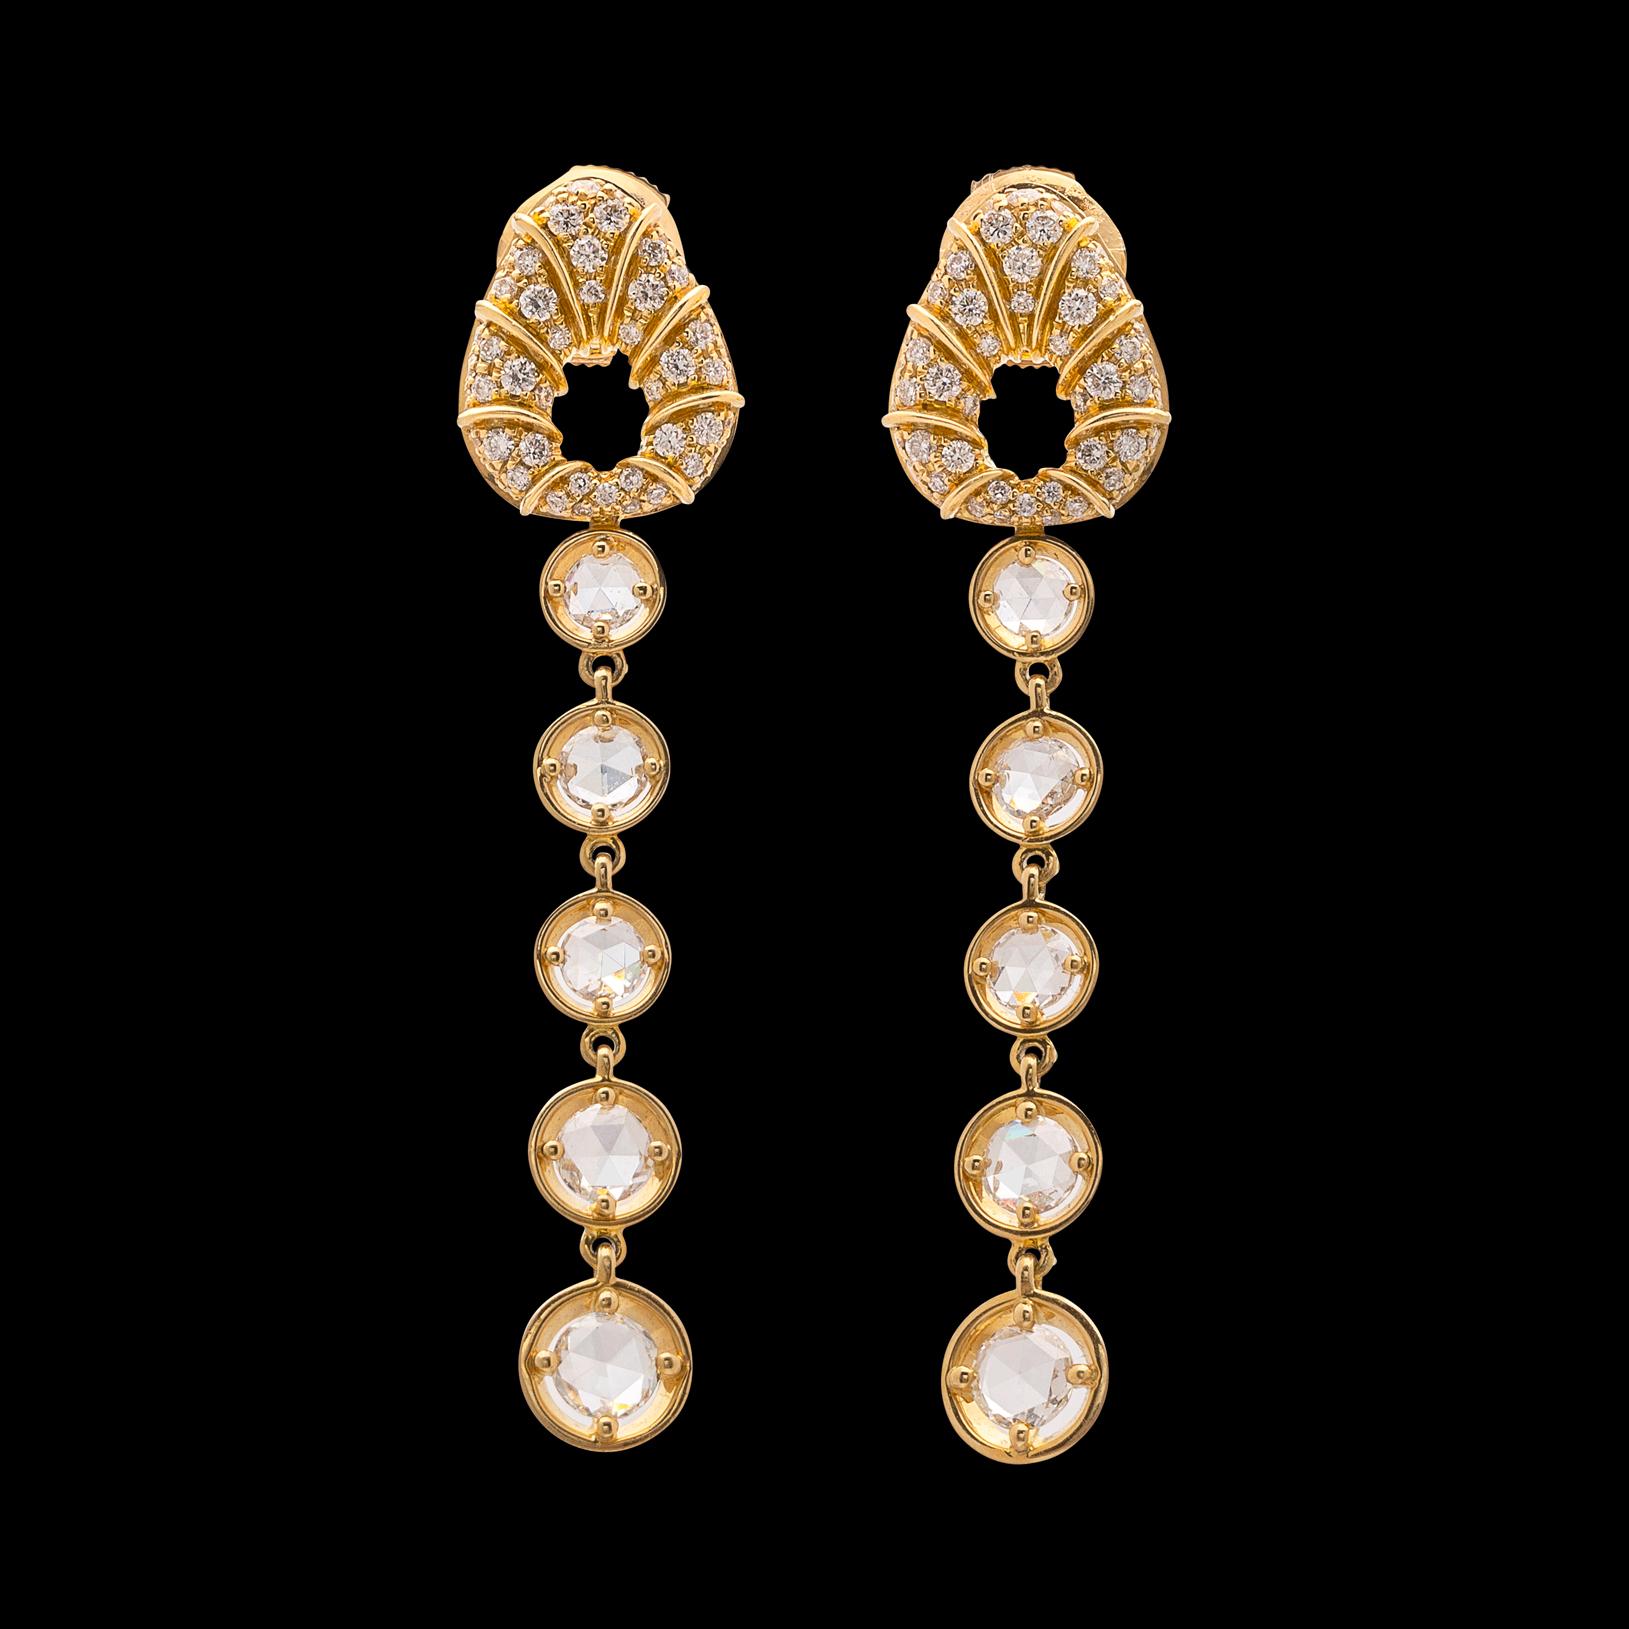 Rose Cut Marina B. Diamond and 18 Karat Gold Drop Earrings